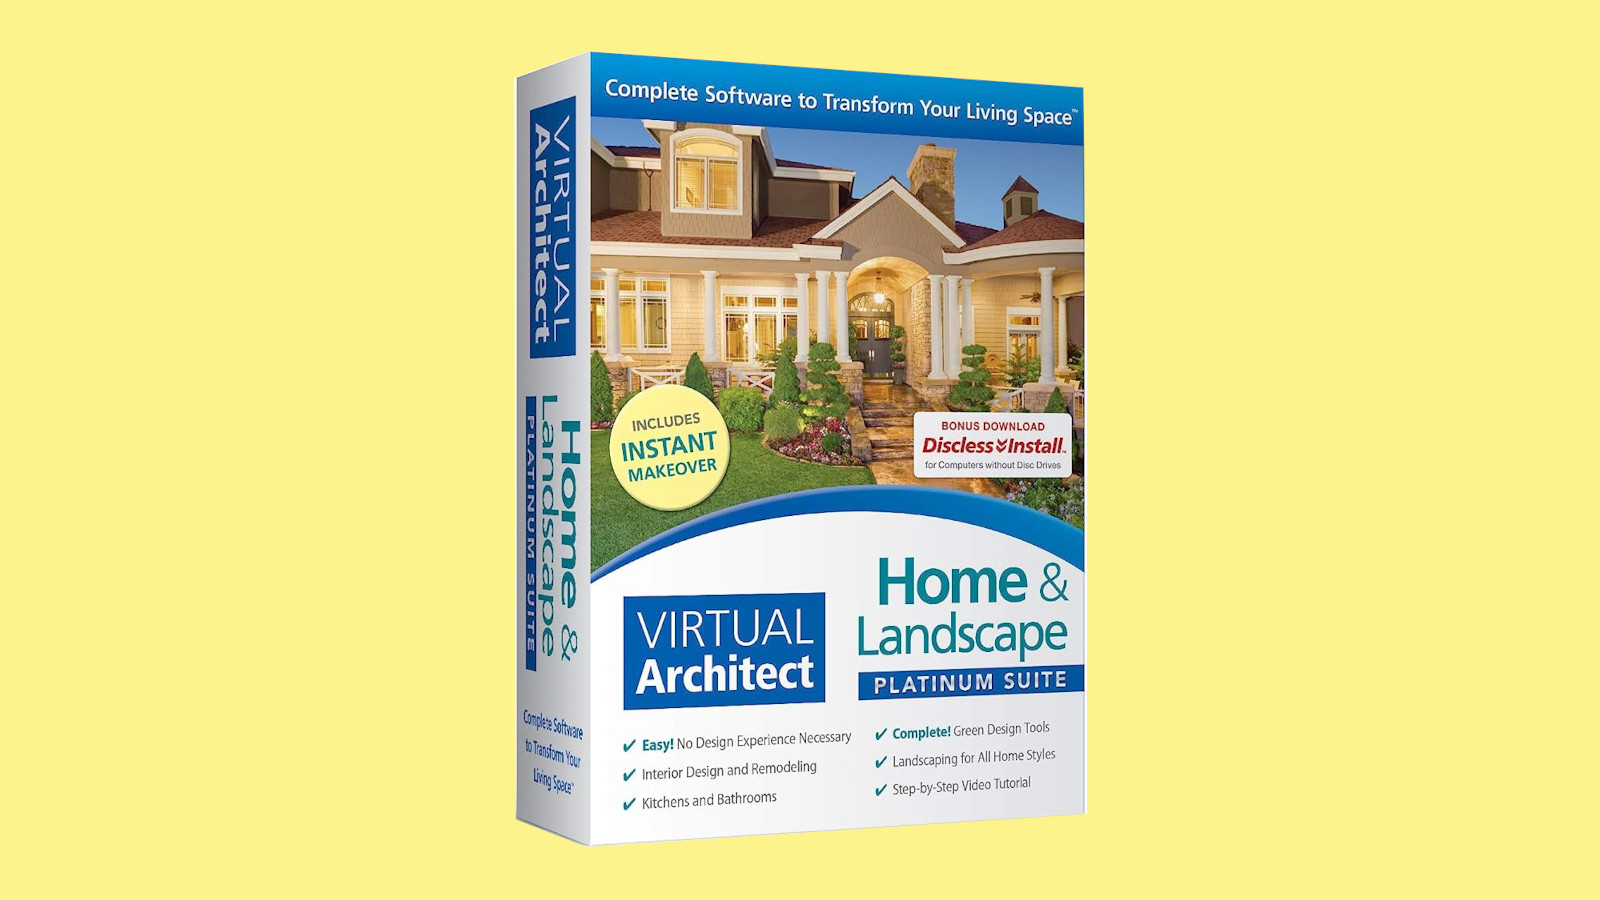 Virtual Architect Home & Landscape Platinum Suite CD Key 103.45 $